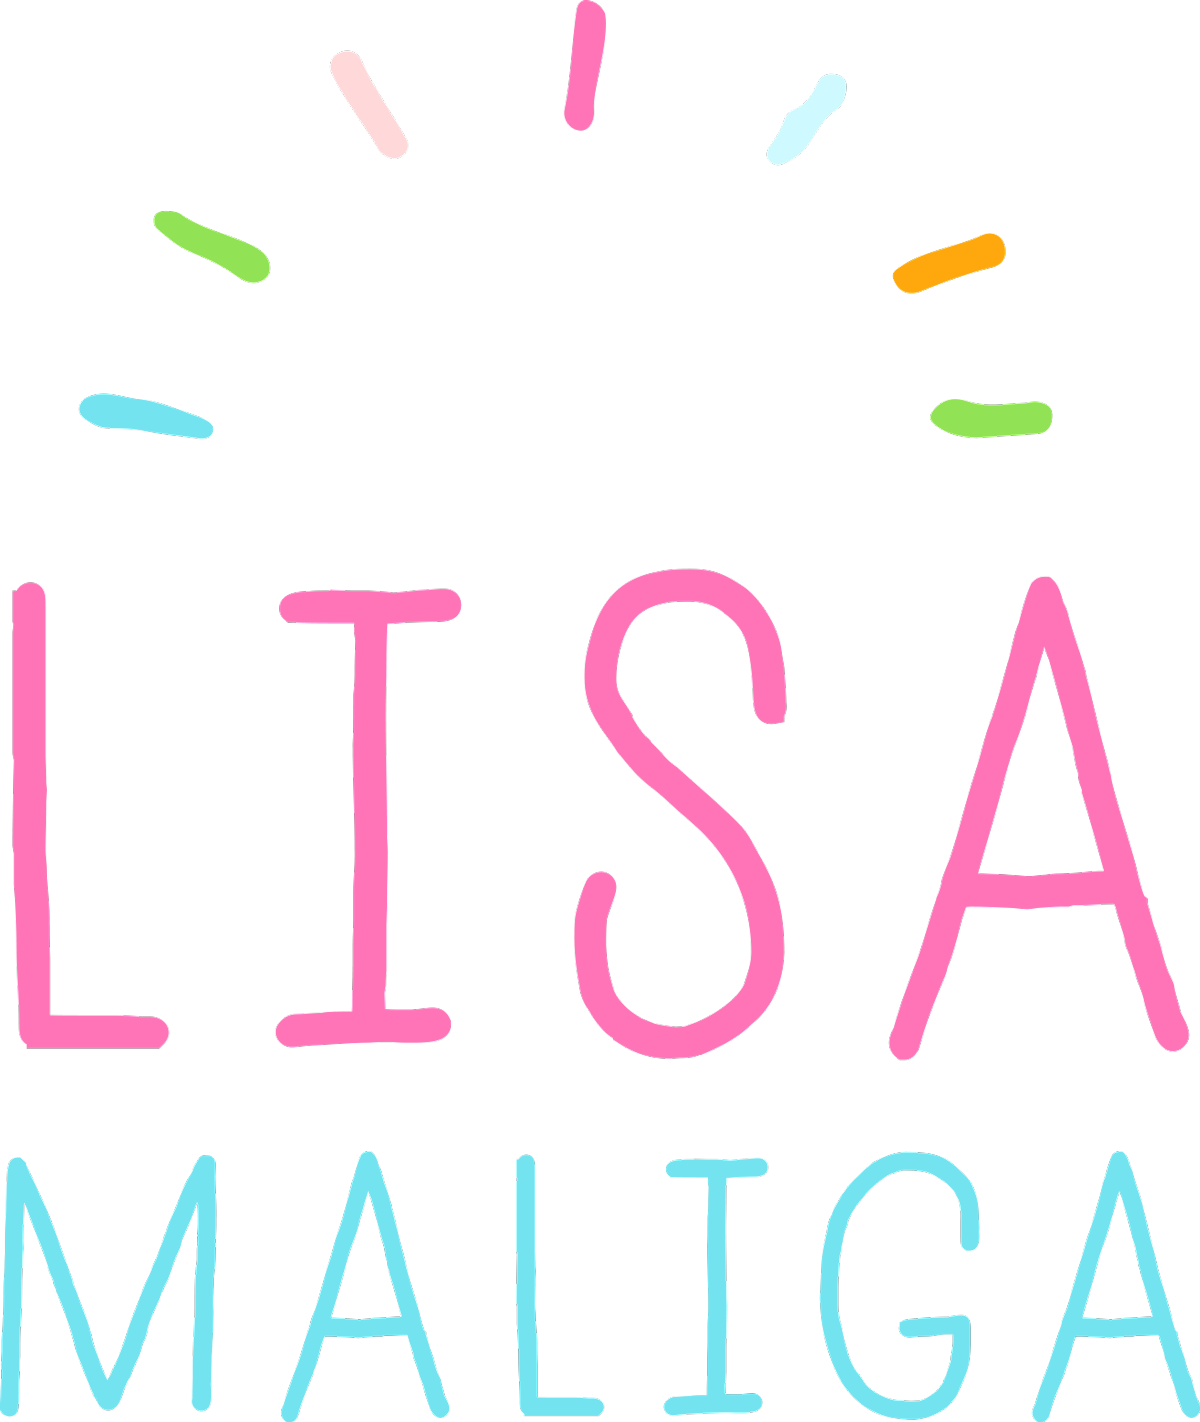 Lisa Maliga